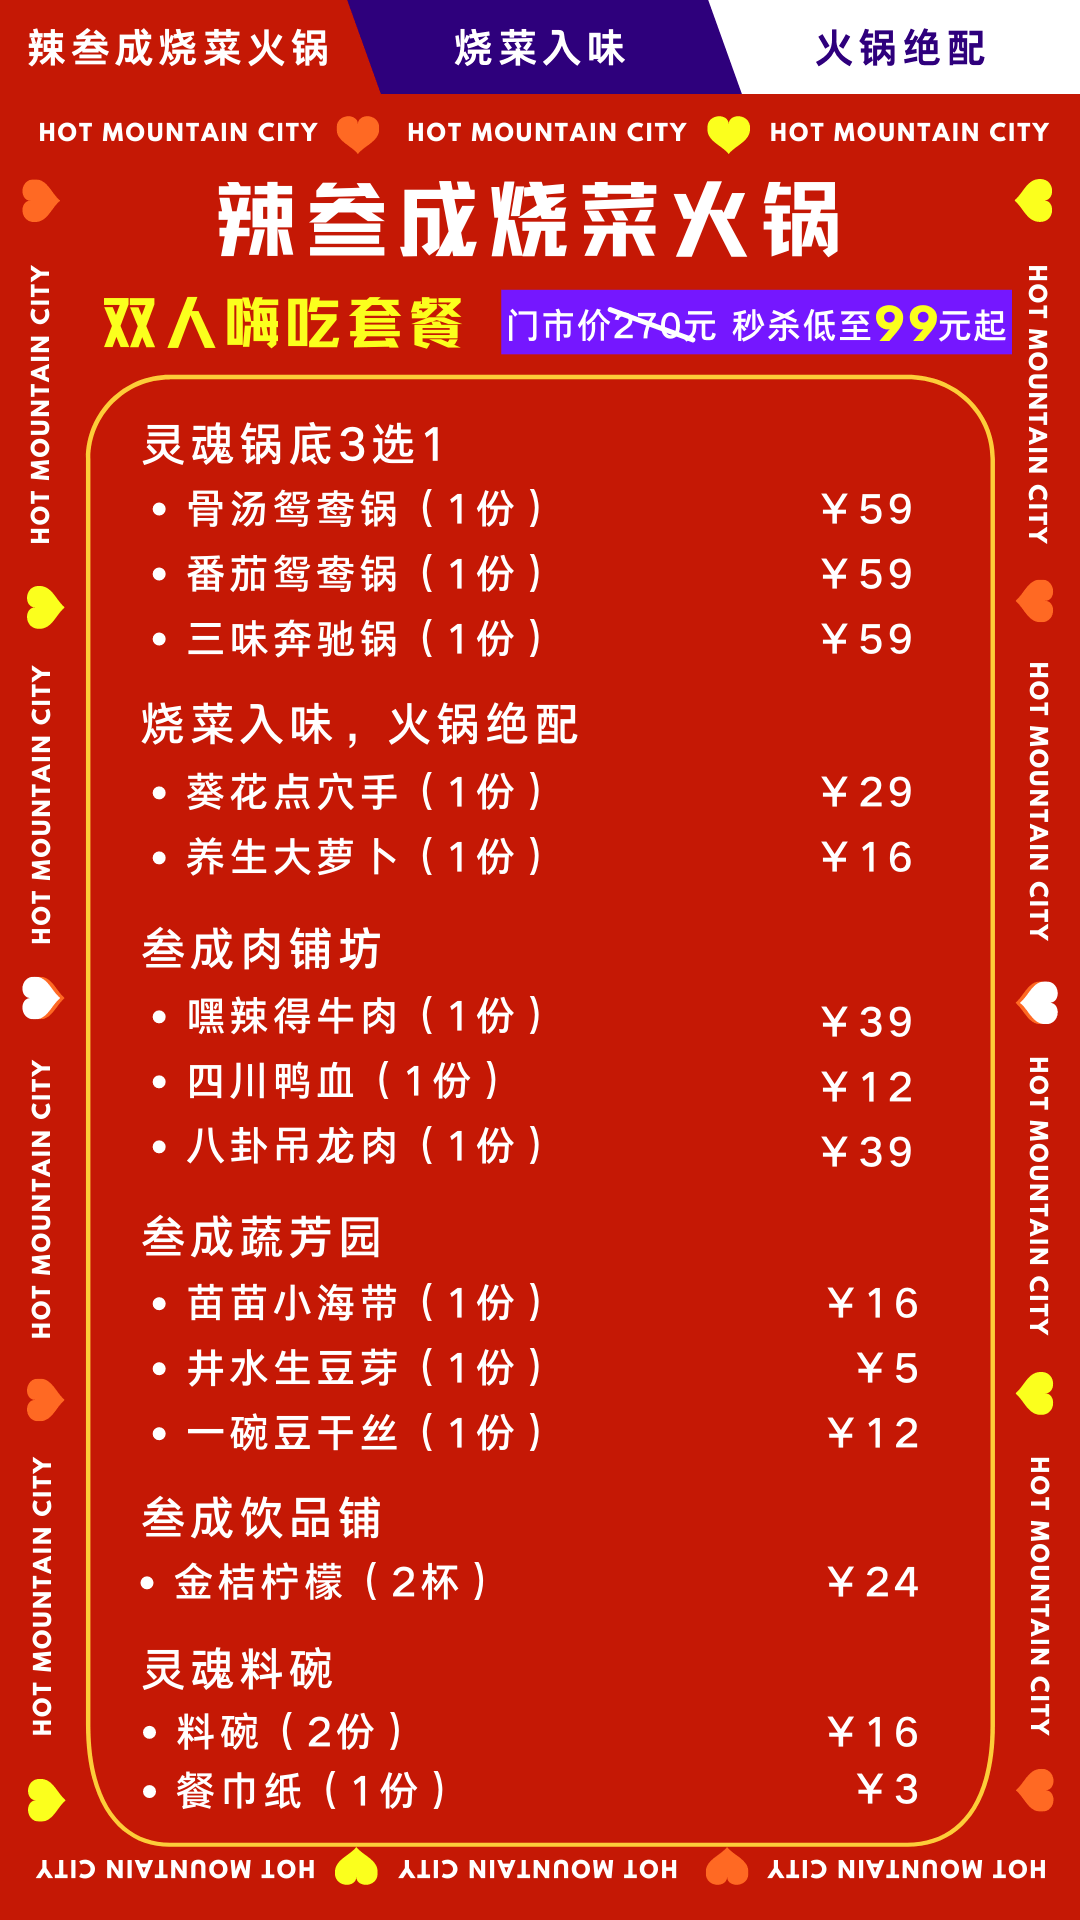 大唐不夜城店丨辣叁成烧菜火锅丨双人餐丨沙溢的火锅店